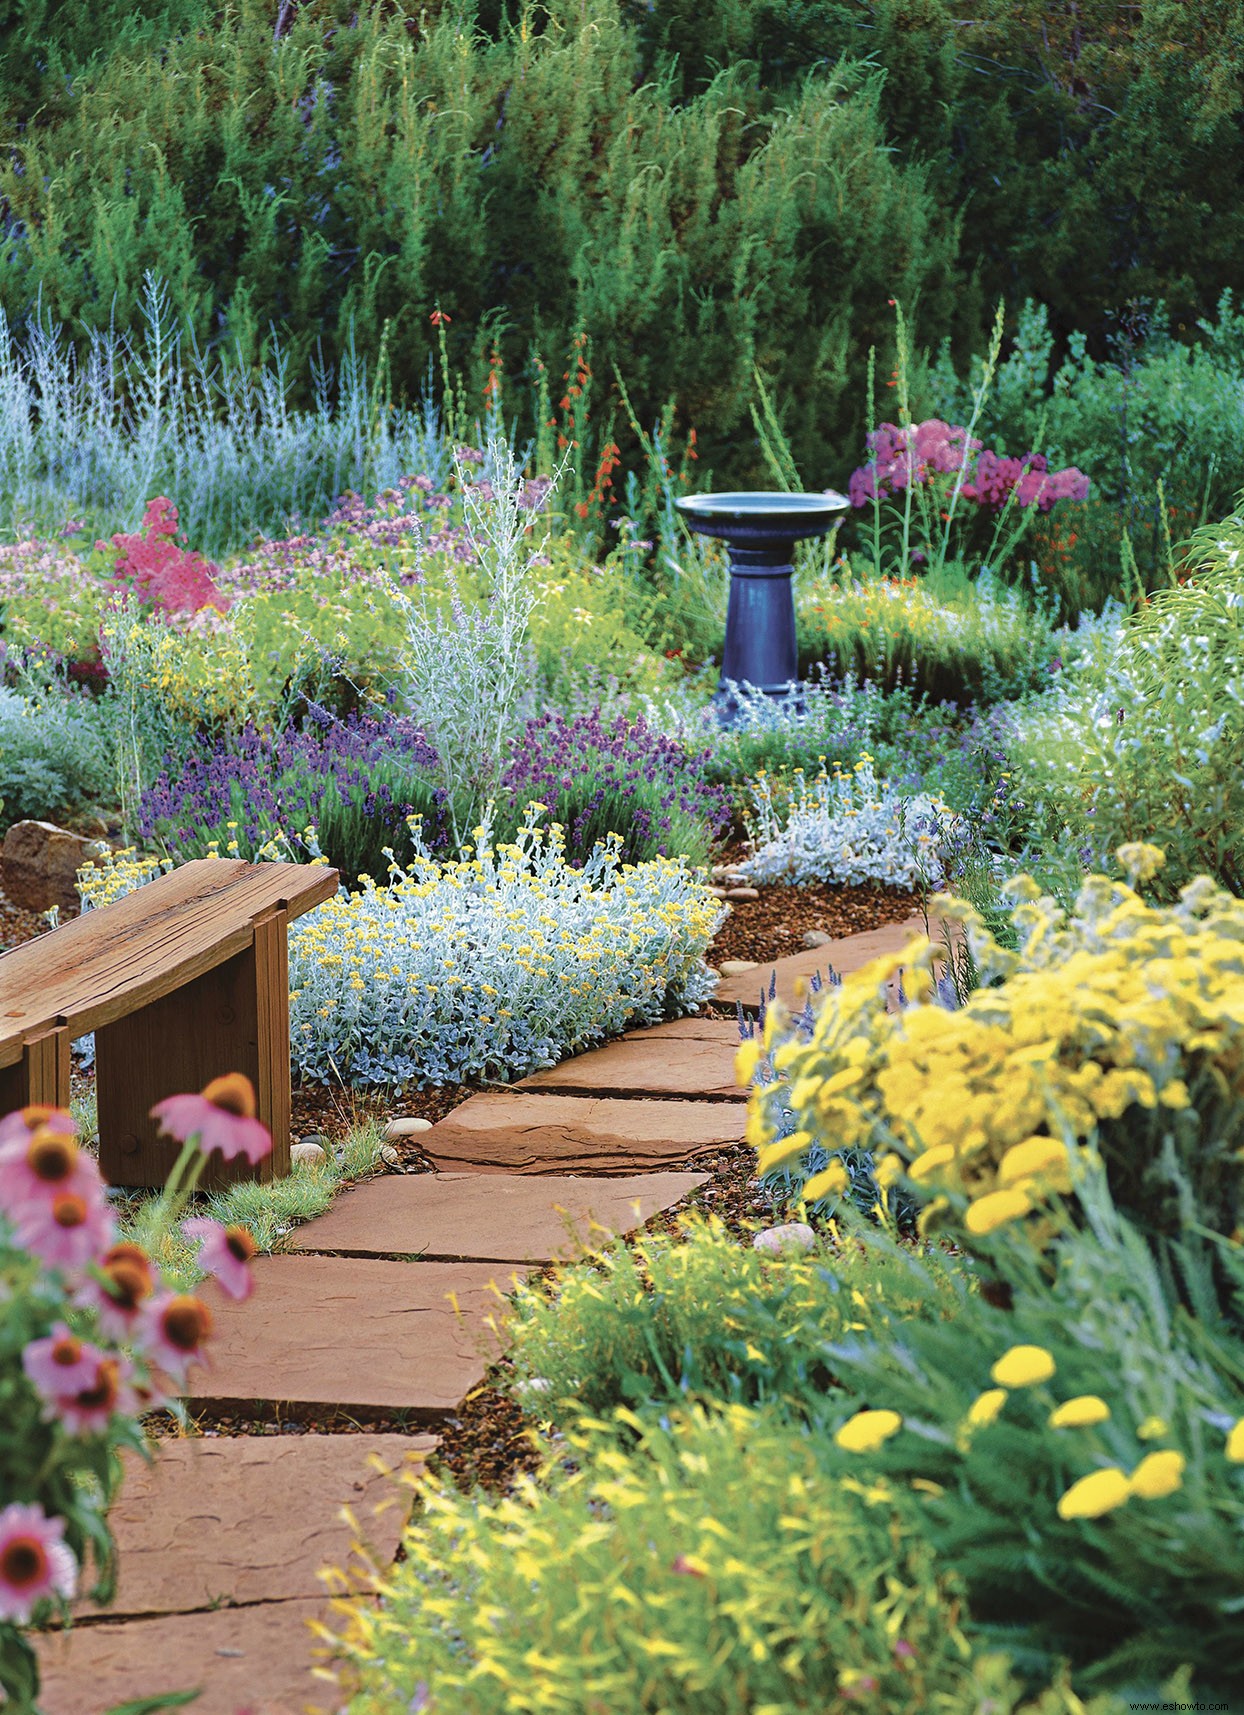 Plante este plan de jardín perenne resistente como clavos para un hermoso paisaje de bajo mantenimiento 